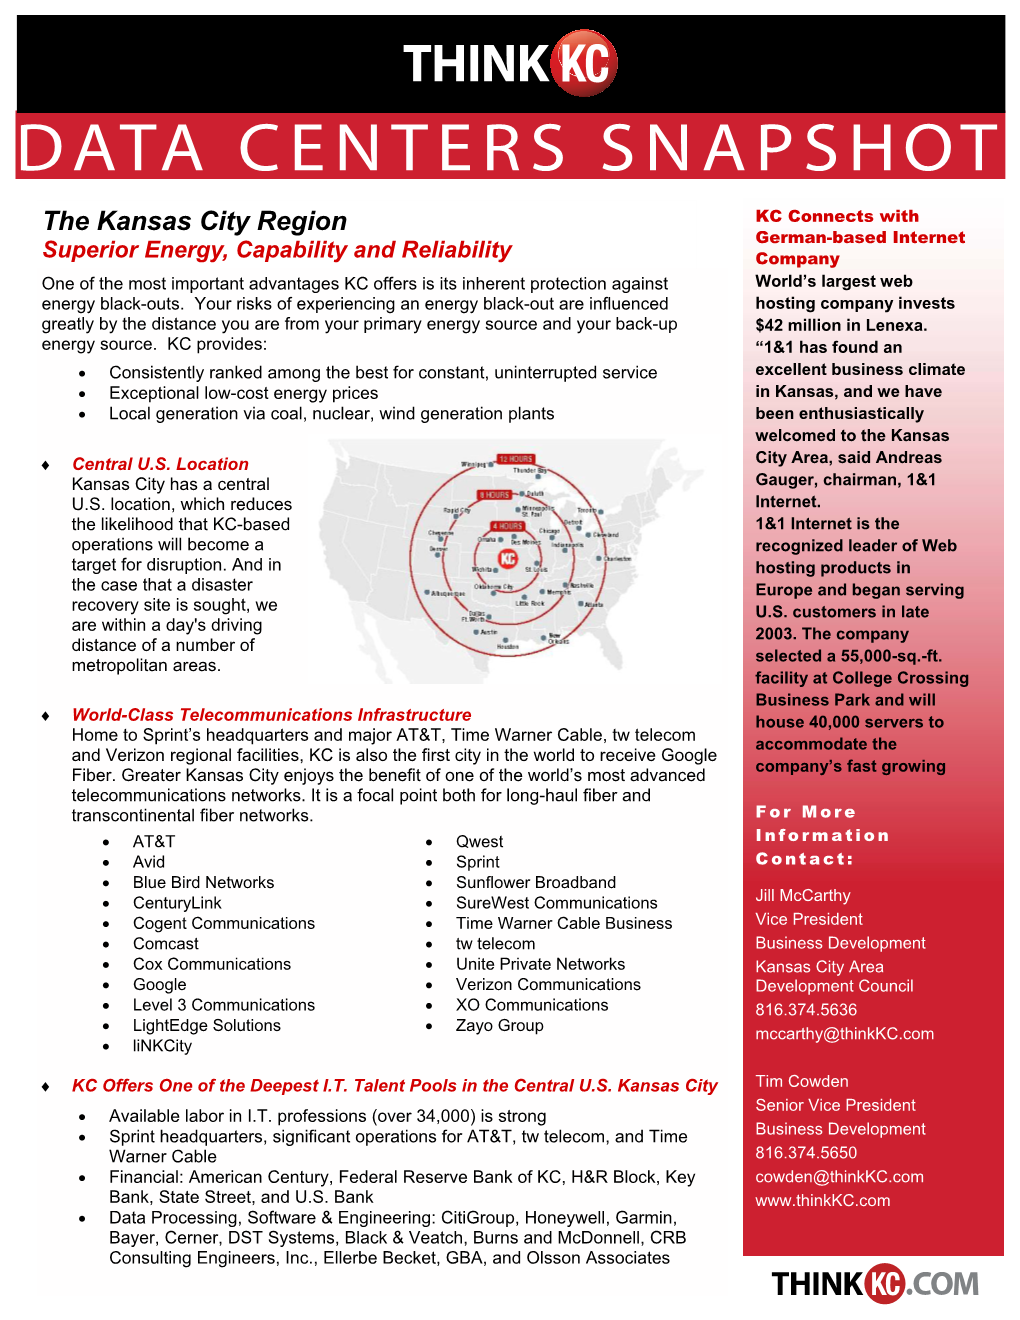 Data Center Snapshot